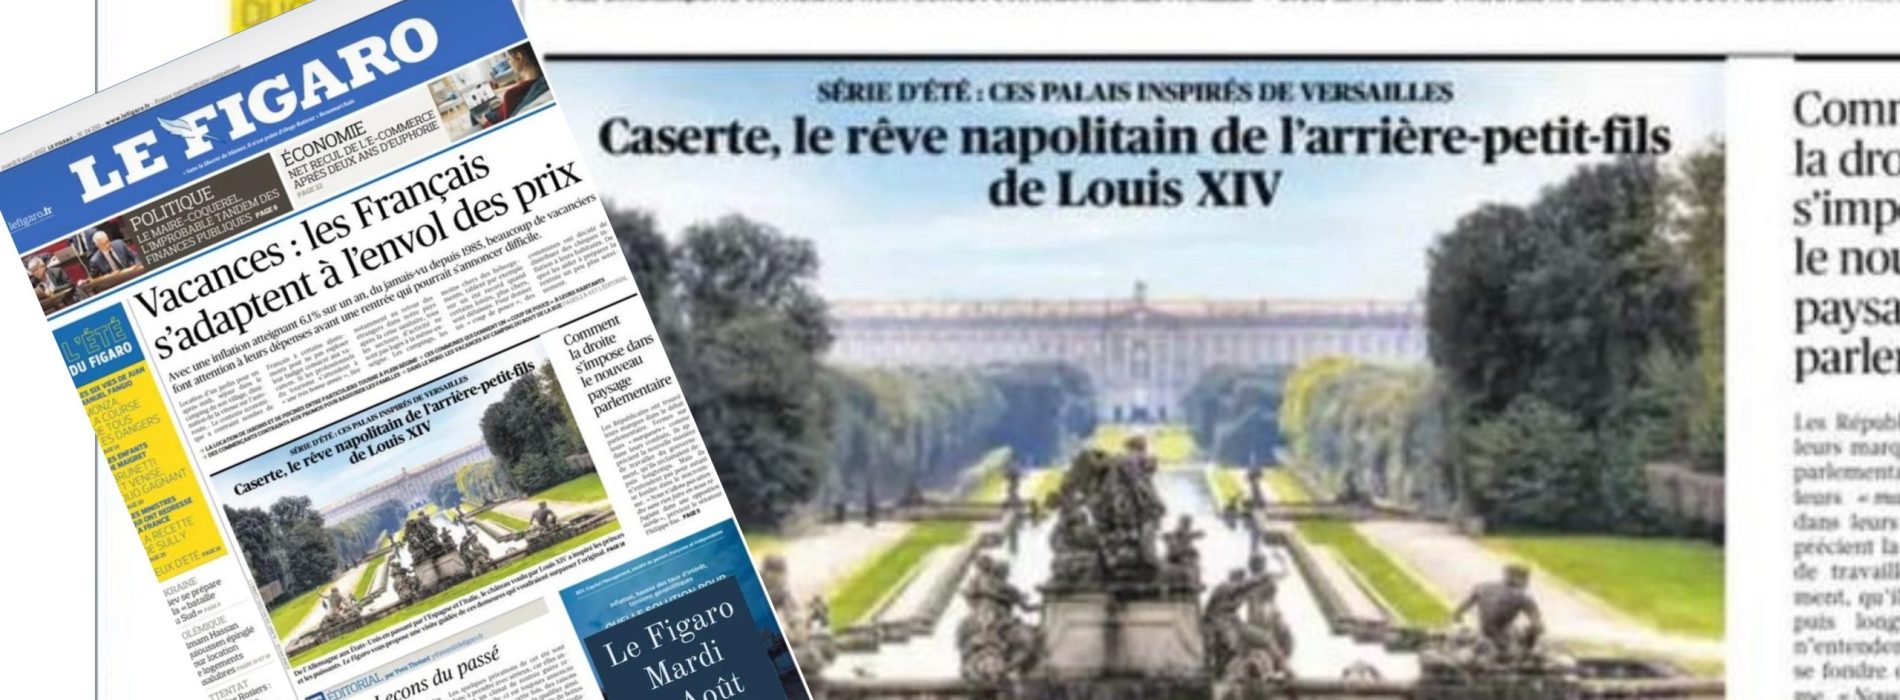 Le Figaro, il giornale francese mette in prima pagina la Reggia